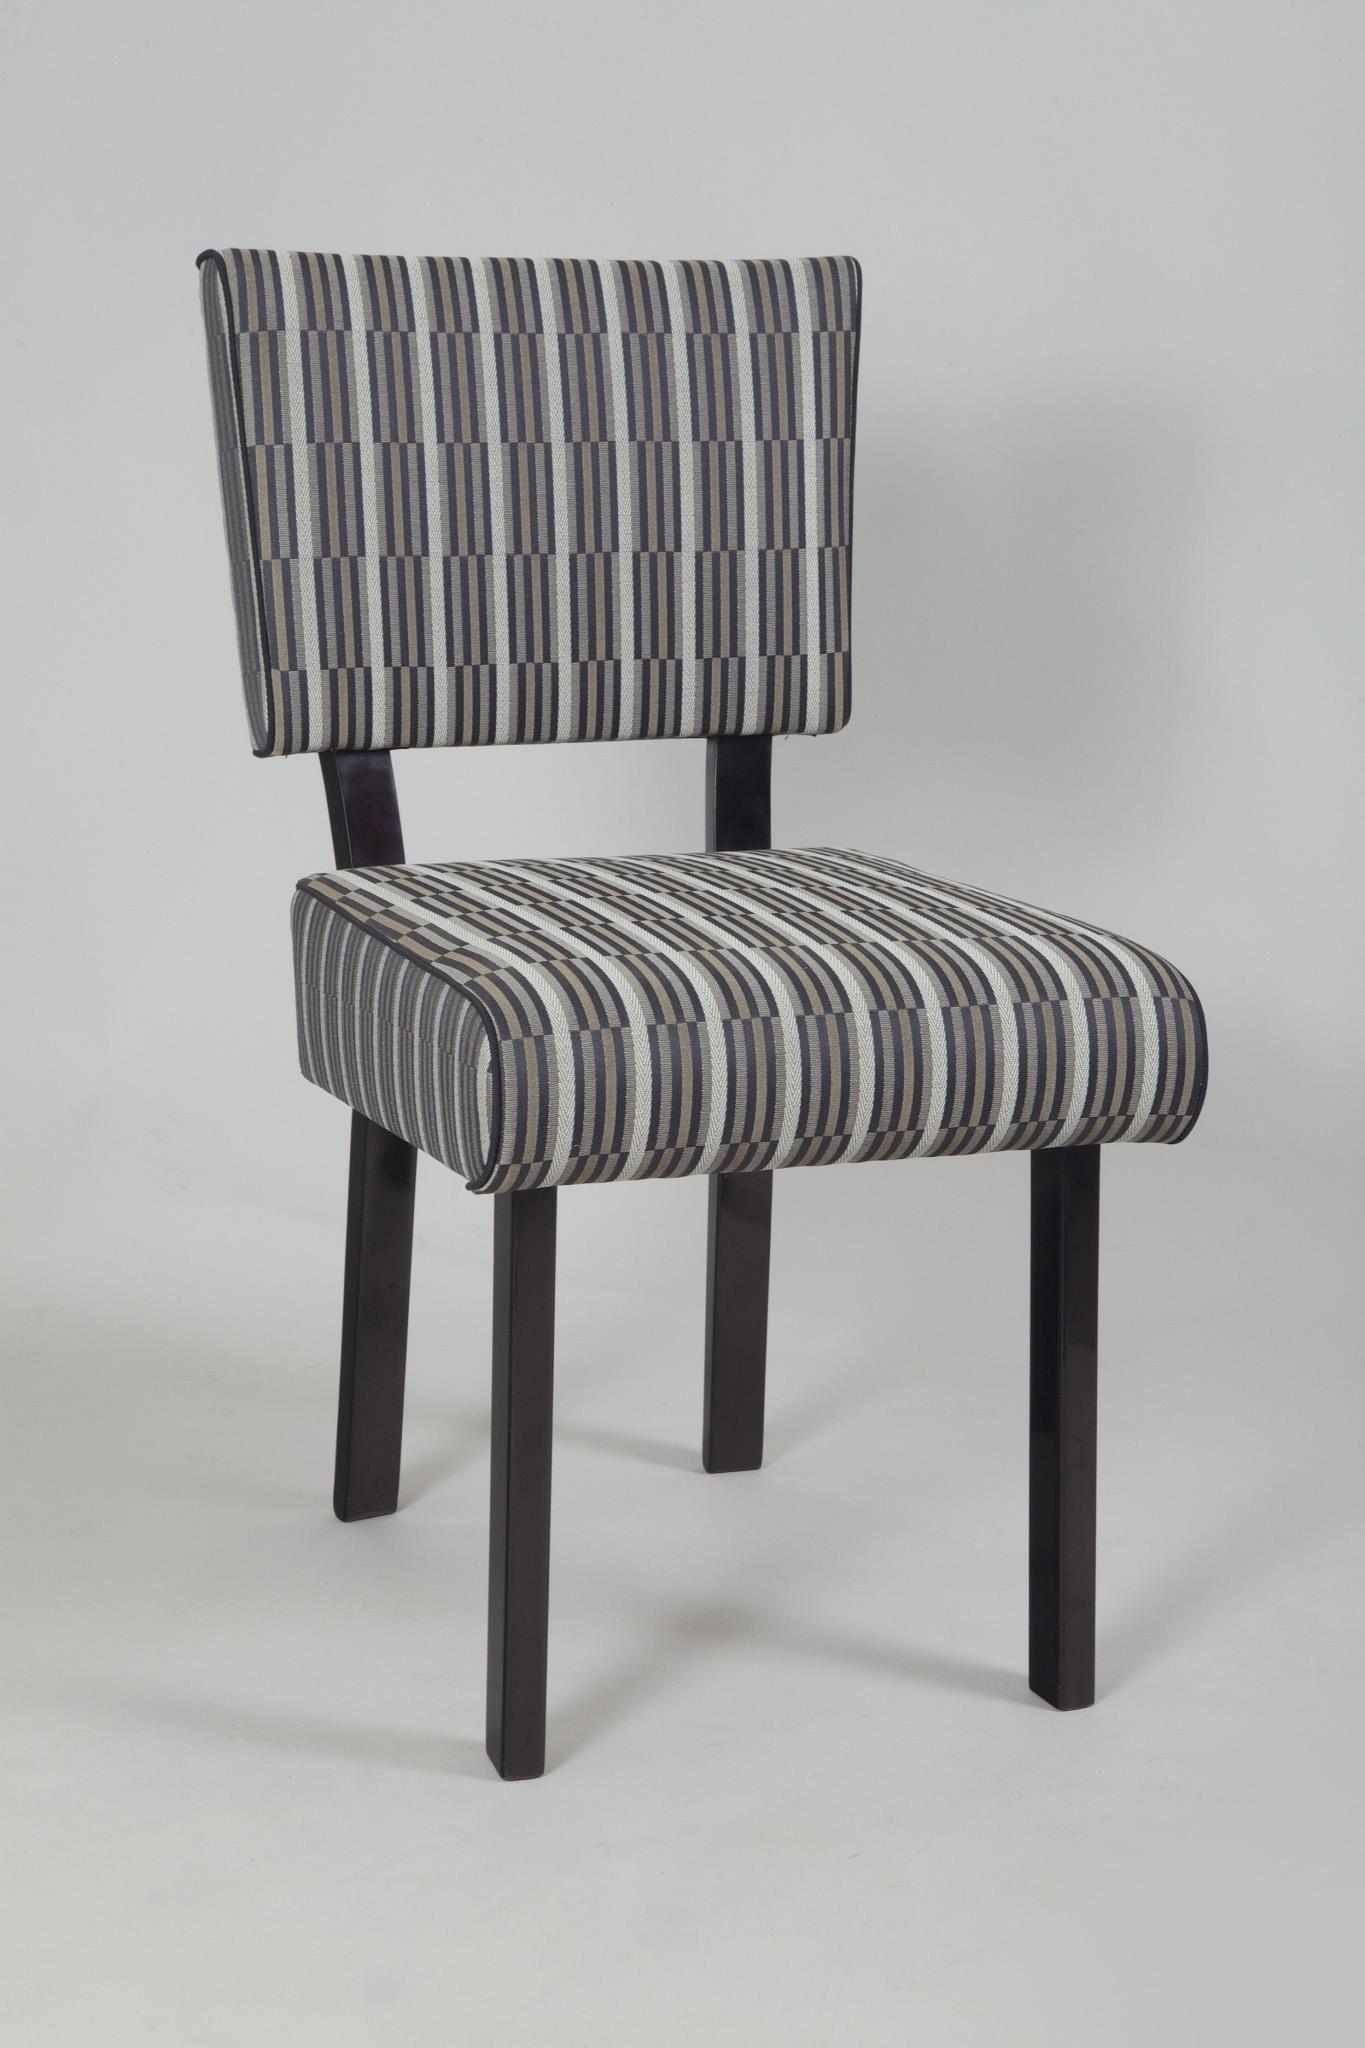 Ensemble de salle à manger Functionalism - 6 pièces de chaises en polish noir, nouvellement tapissées au tissu Backhausen selon les dessins originaux.